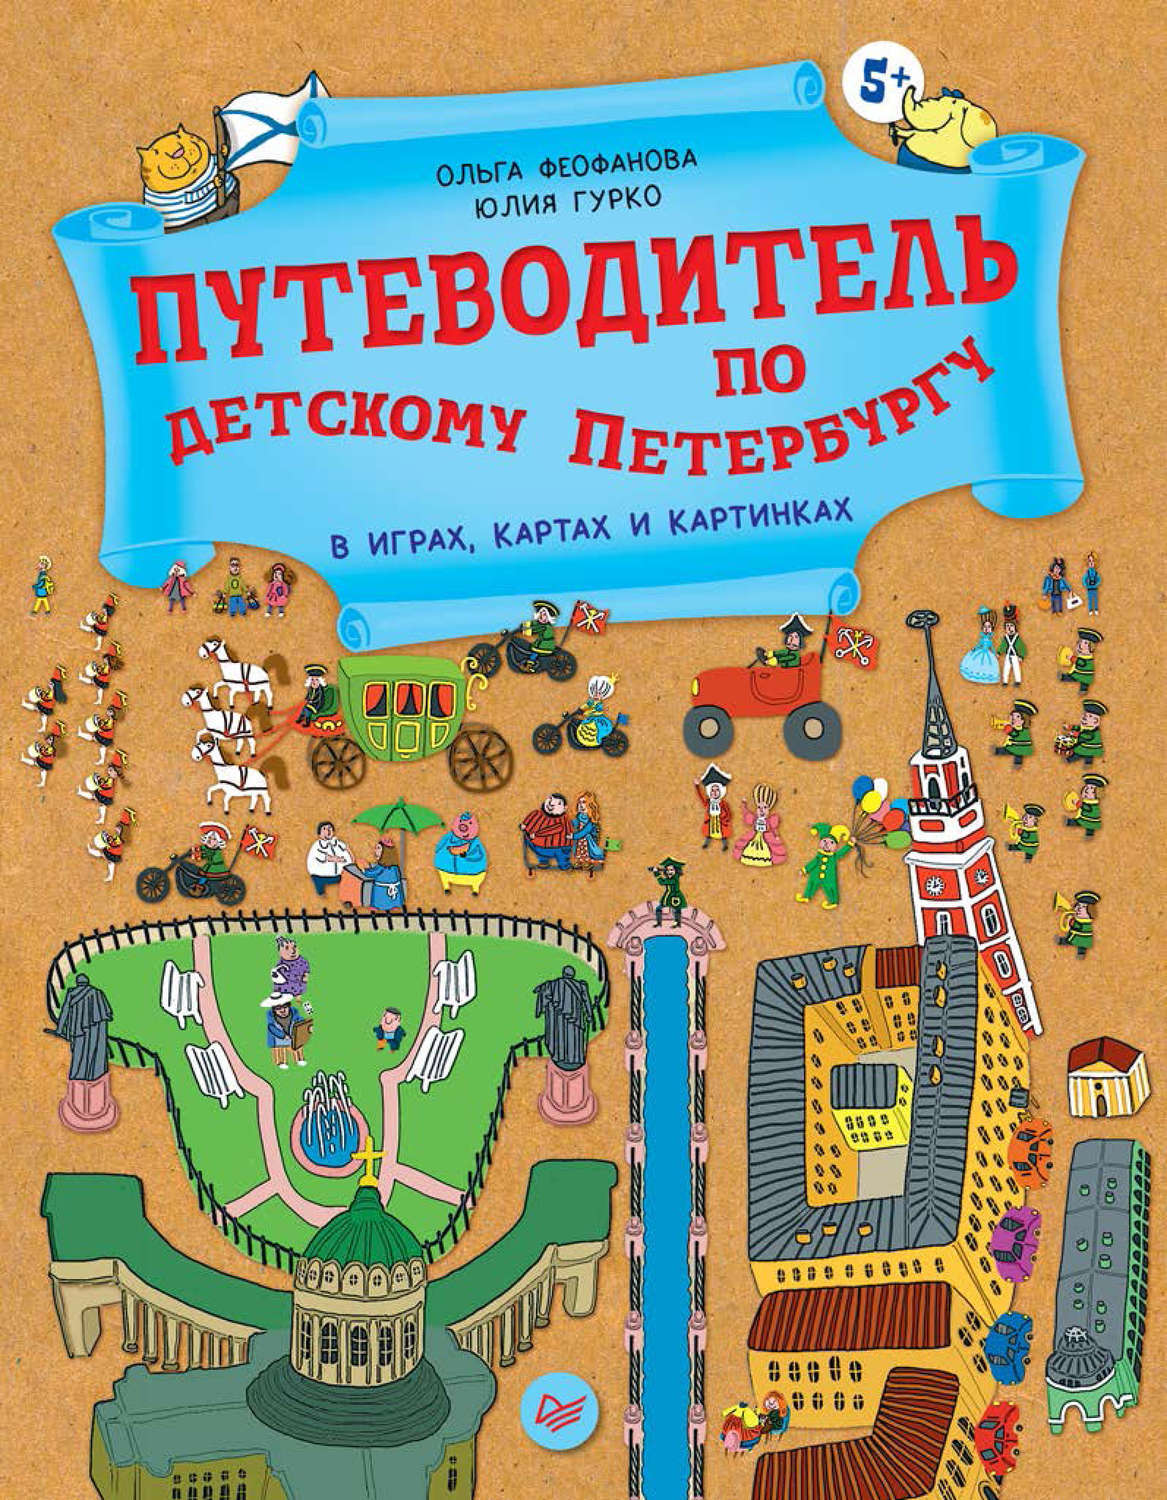 Детская карта санкт петербурга